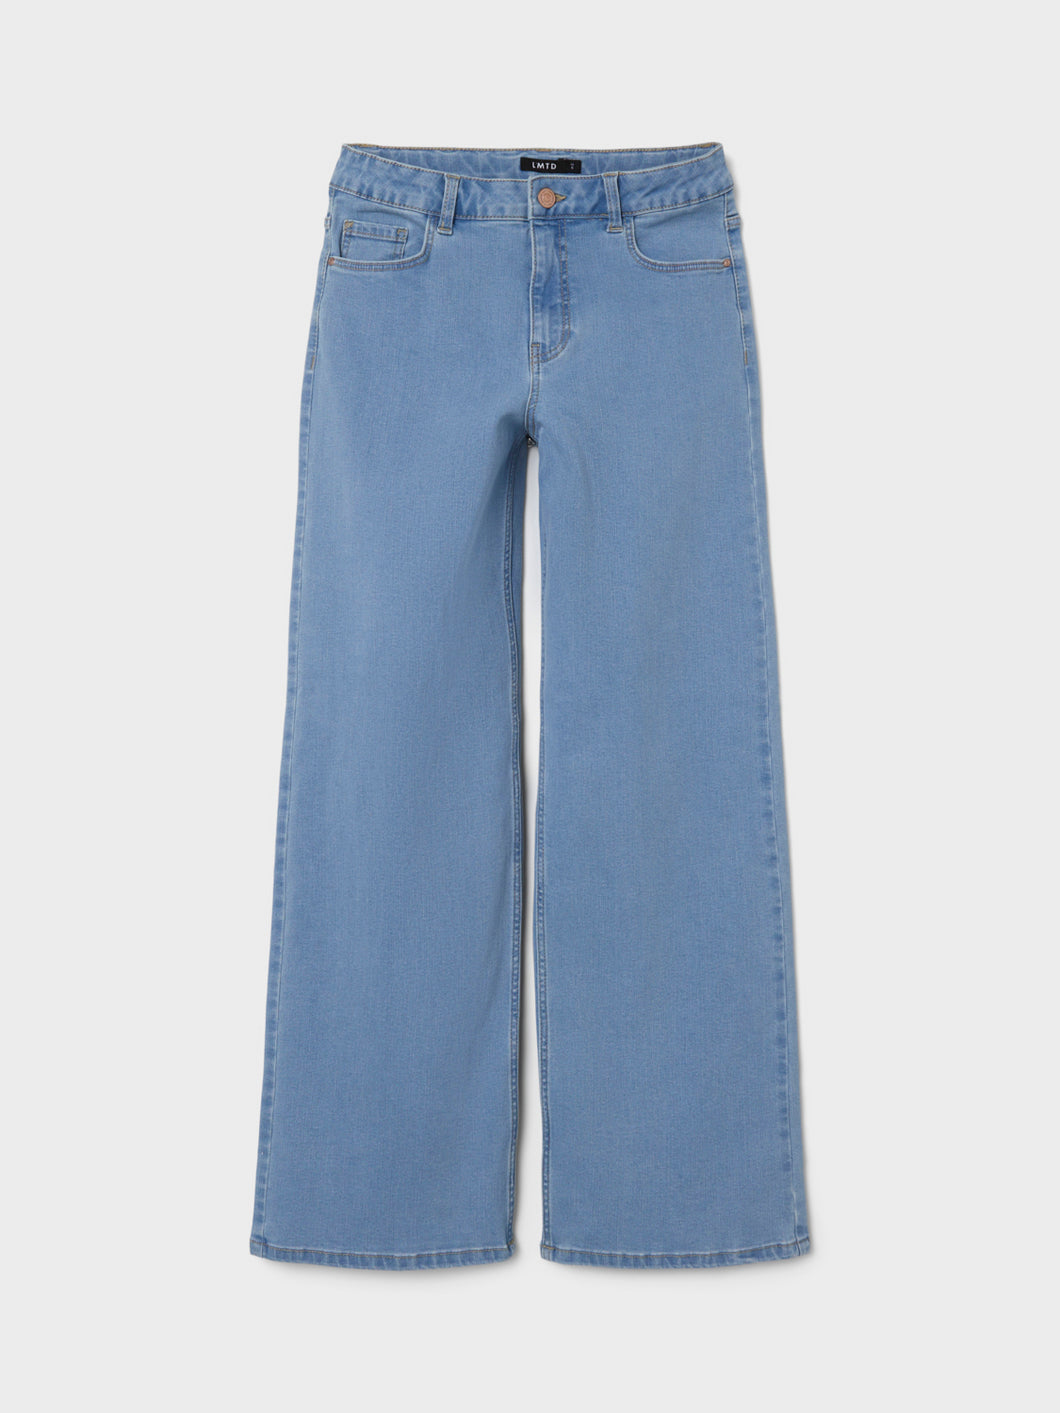 NLFTAULSINE Jeans - Light Blue Denim